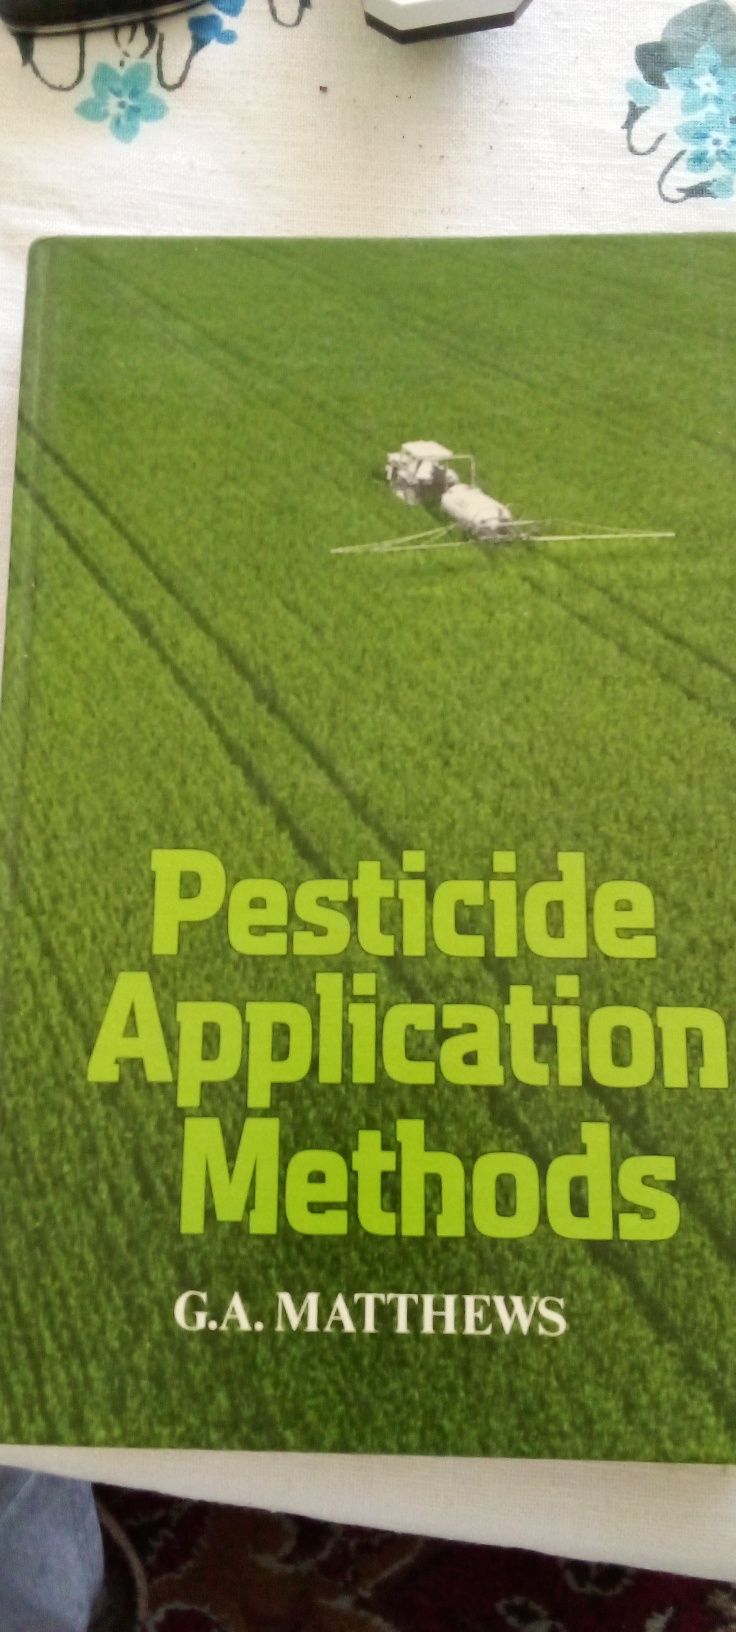 Metody aplikacji pestycydów